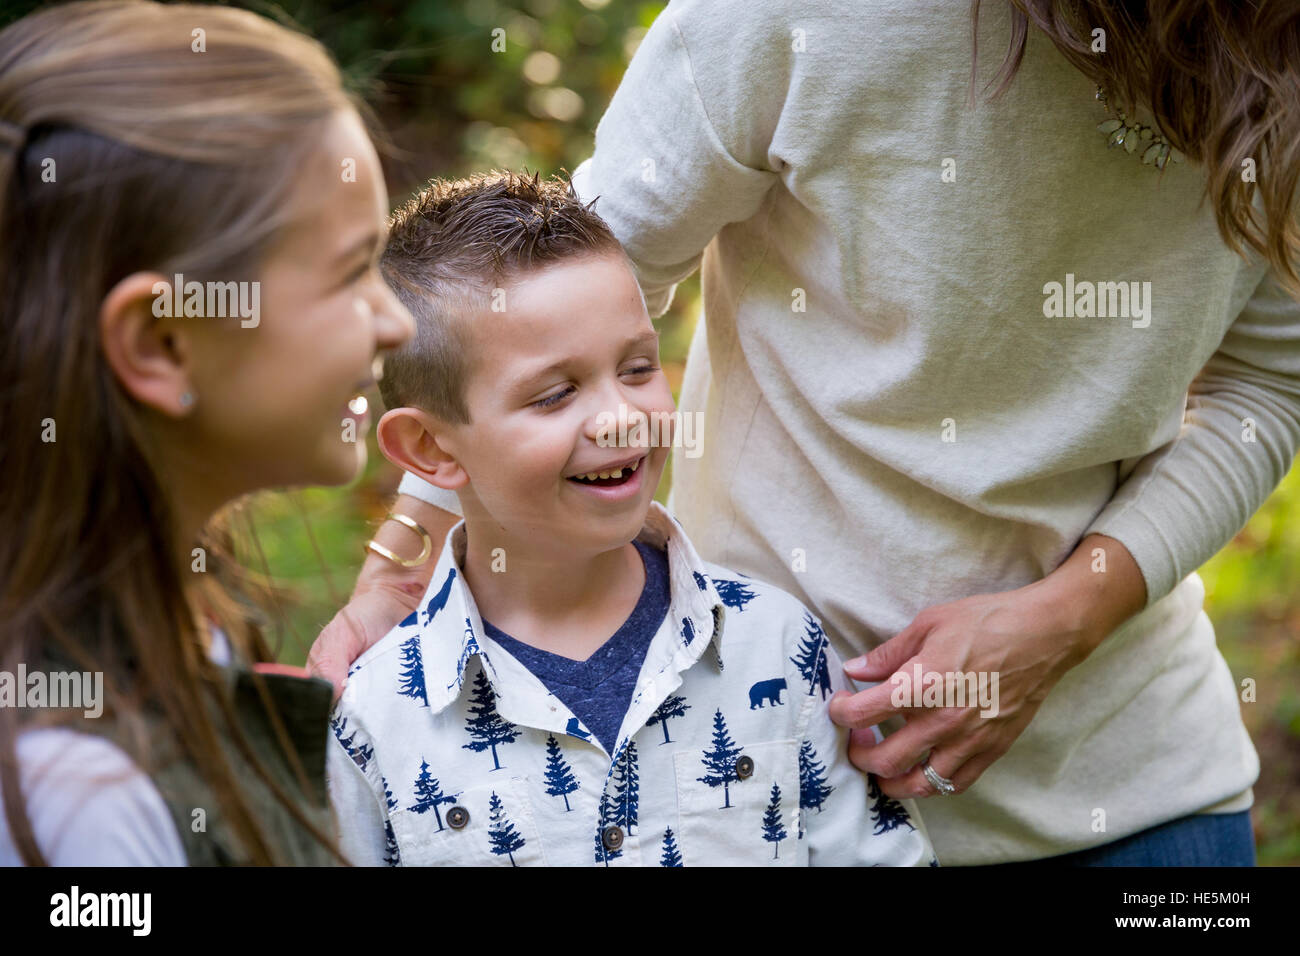 Estilo de vida sincero retrato de una joven y su hermana reír y sonreír a un parque natural. Foto de stock